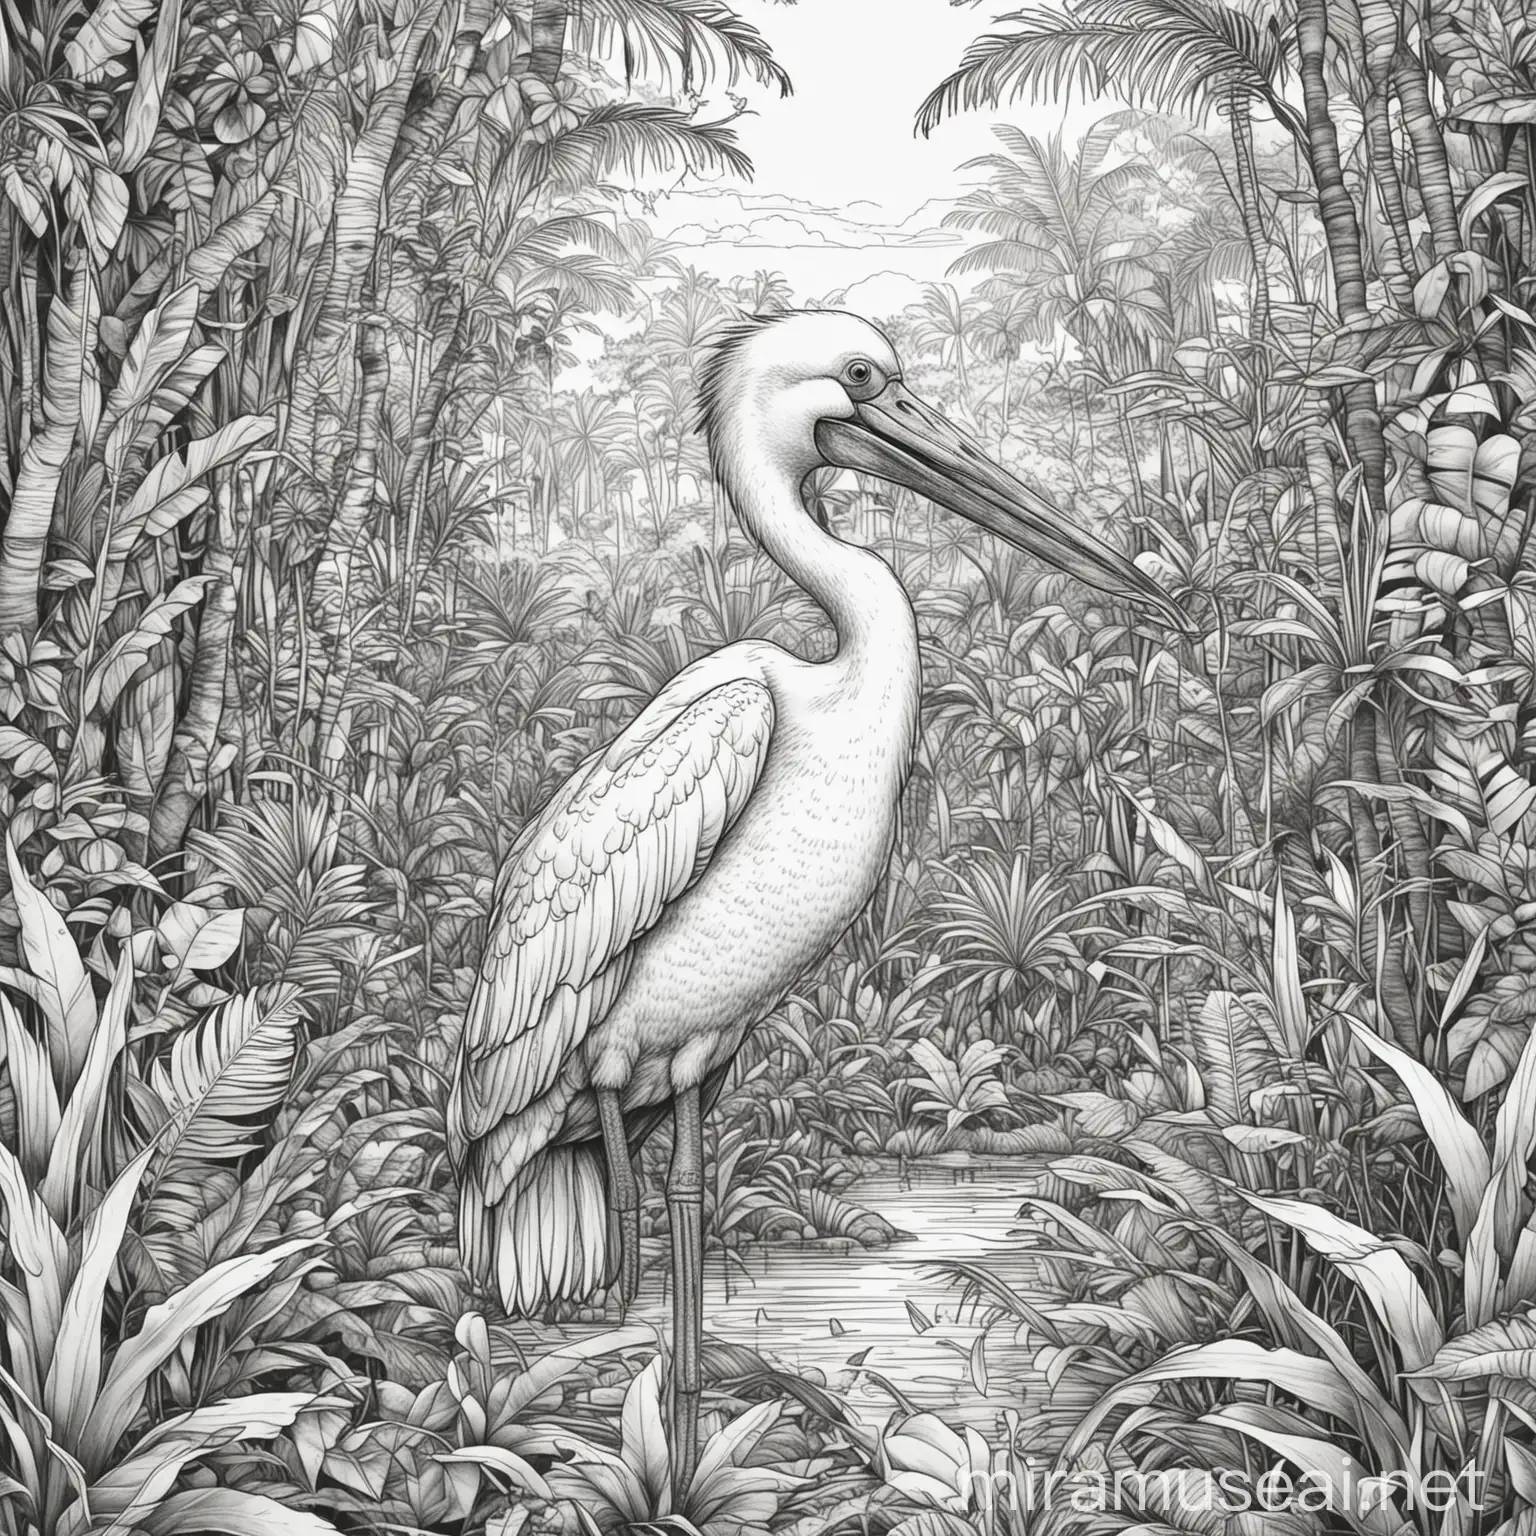 Pelicano Coloring Book Jungle Adventure for Kids